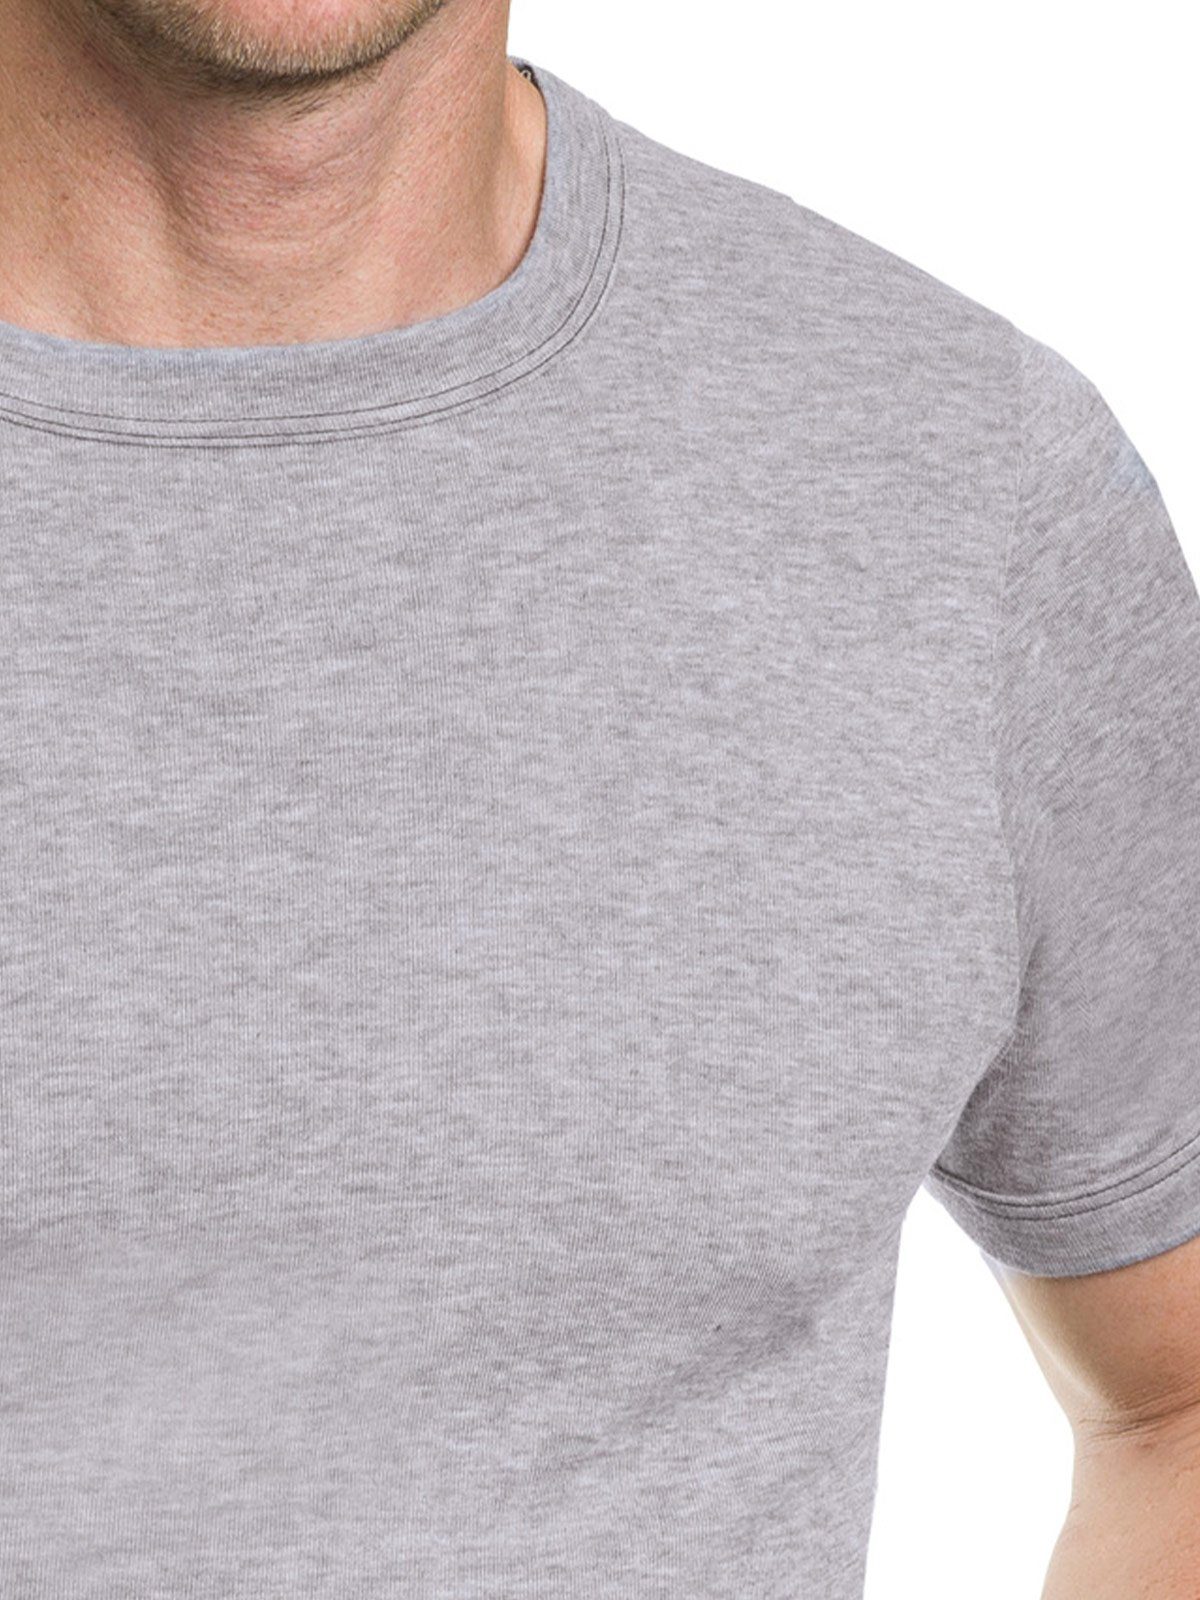 KUMPF Unterziehshirt 1/2 T-Shirt hohe Trevira Herren (Stück, Perform 1-St) Markenqualität Arm